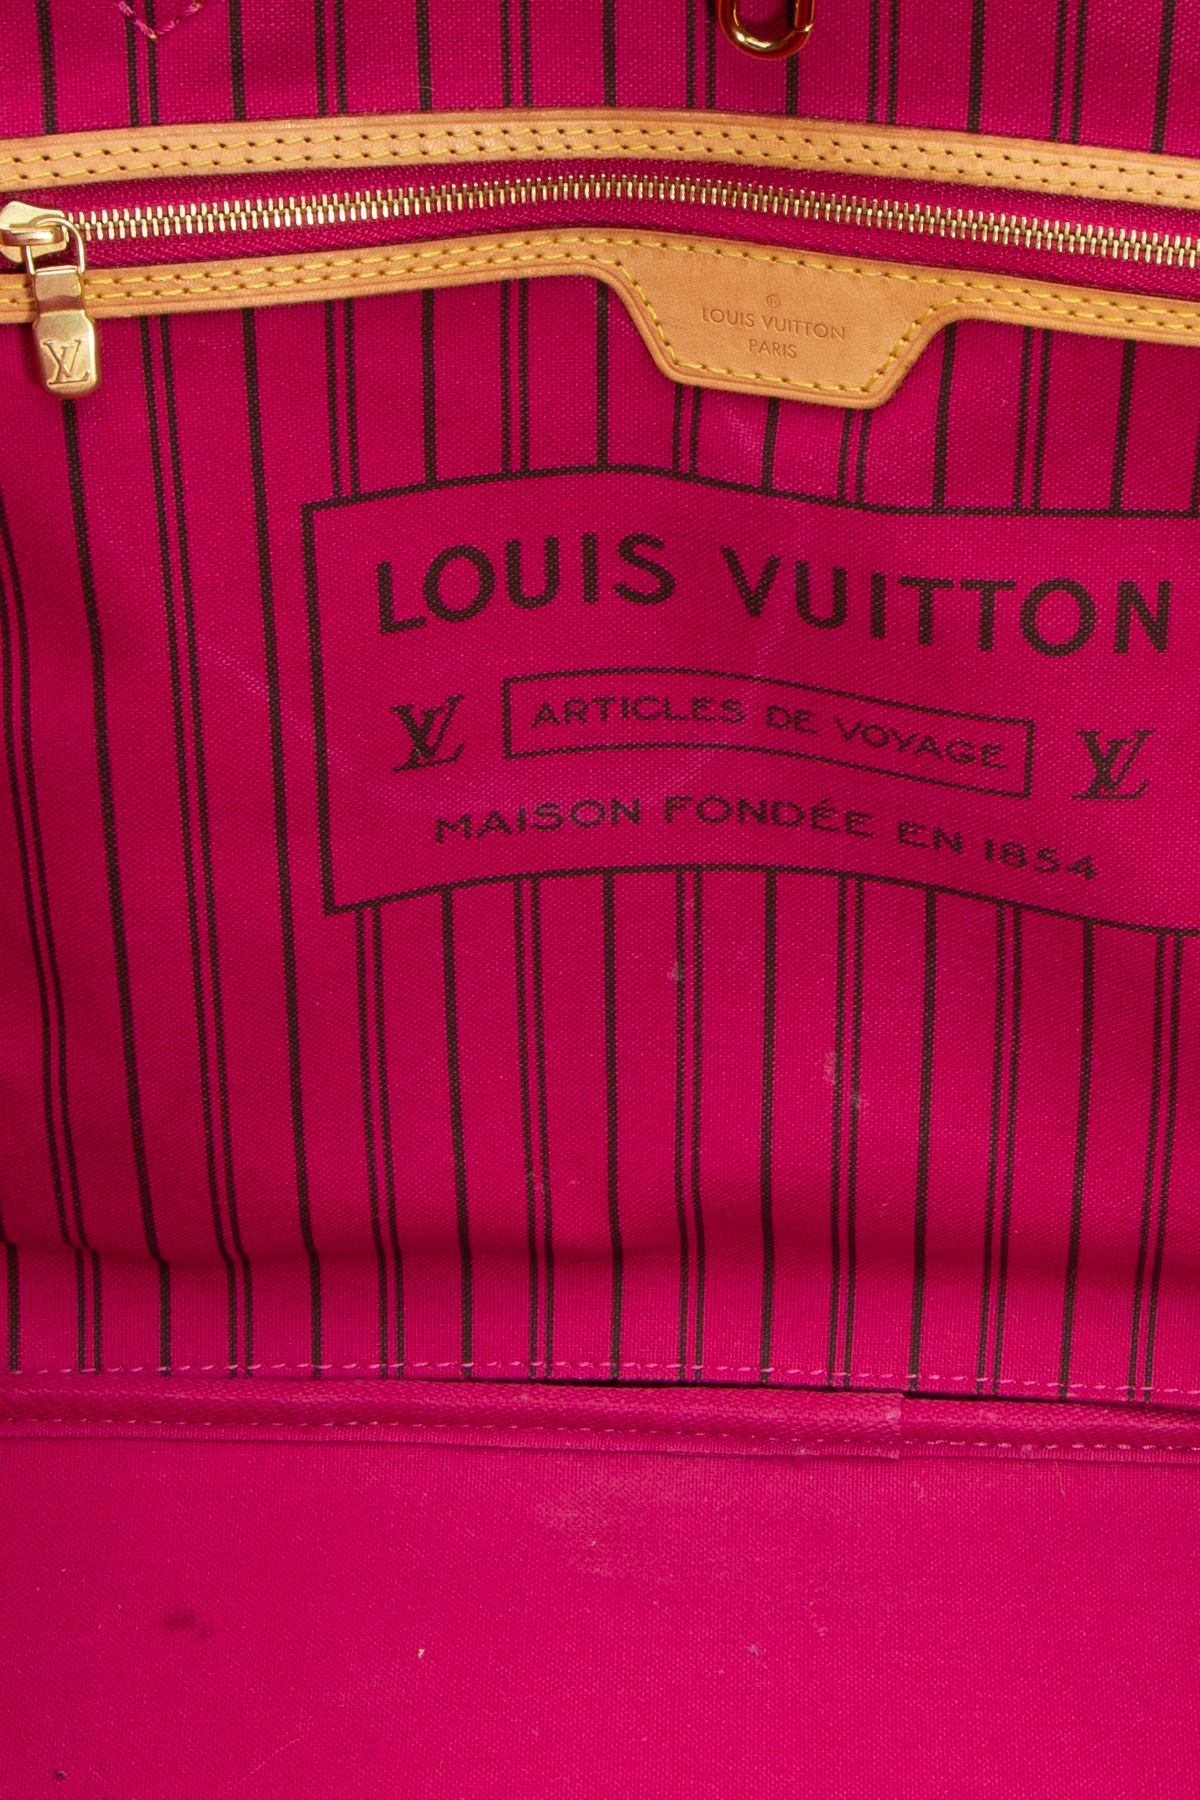 Best Louis Vuitton Articles De Voyage Collection Large Neverfull